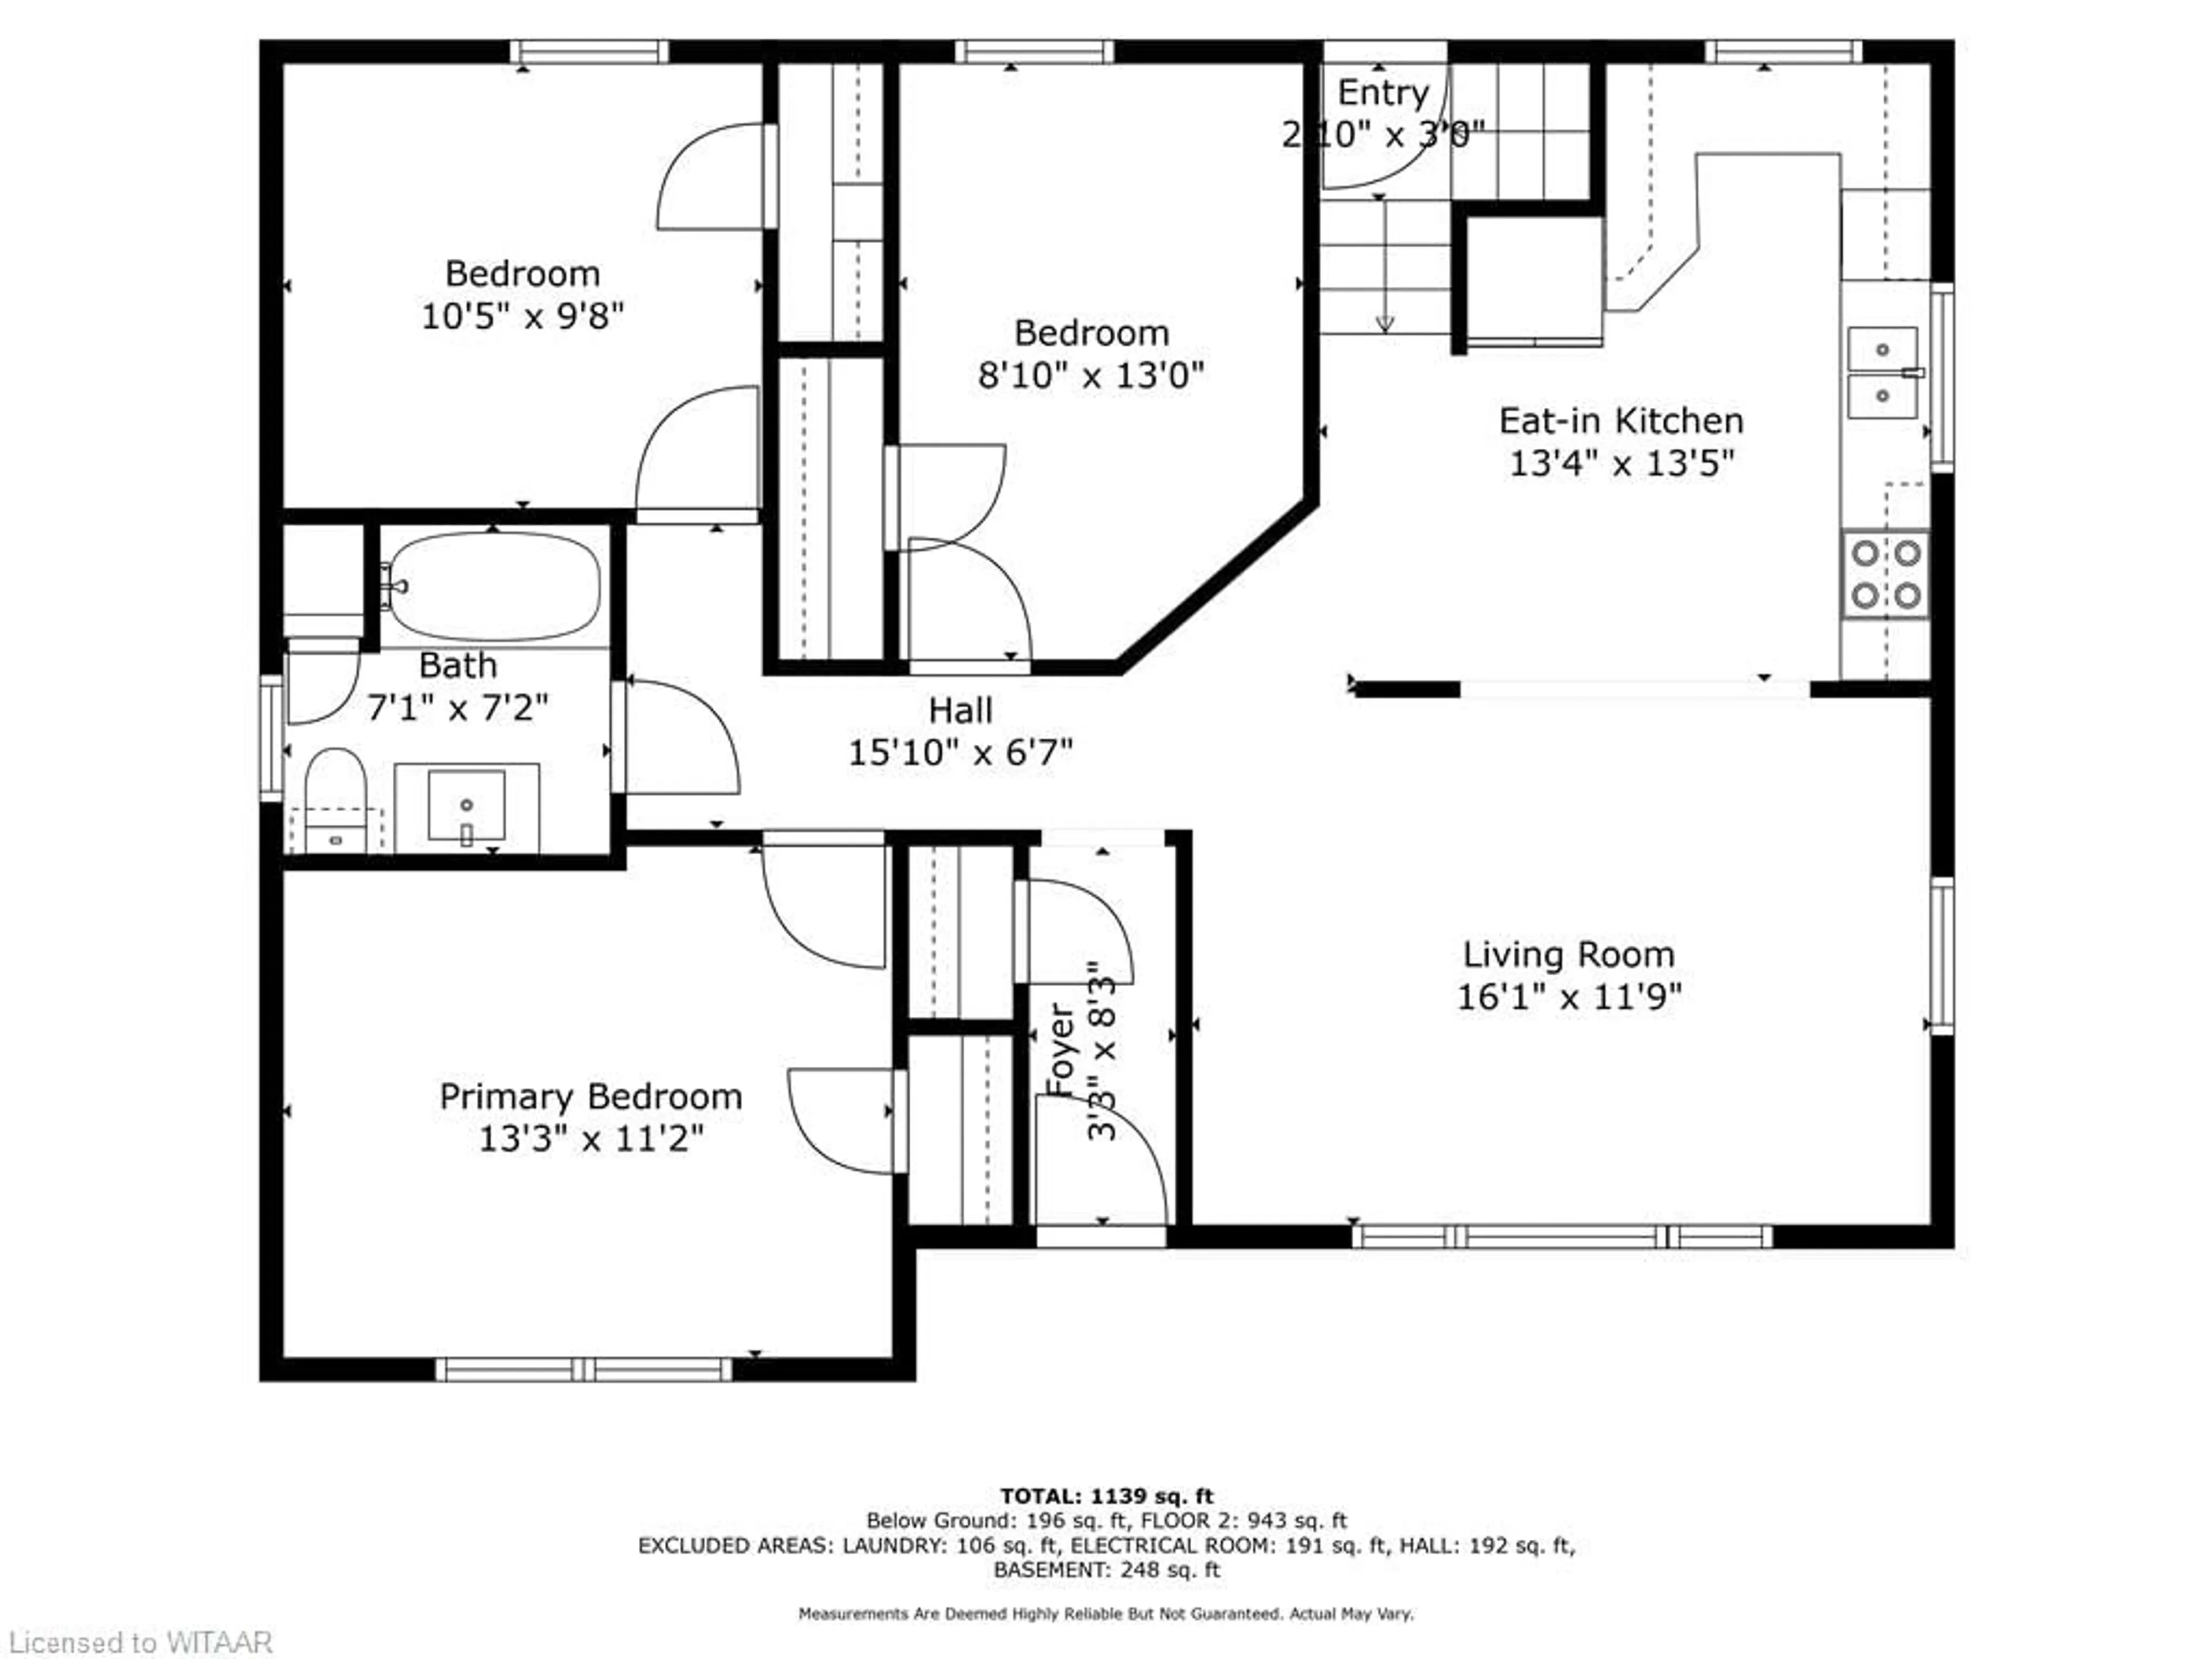 Floor plan for 584446 Beachville Rd, Beachville Ontario N0J 1A0